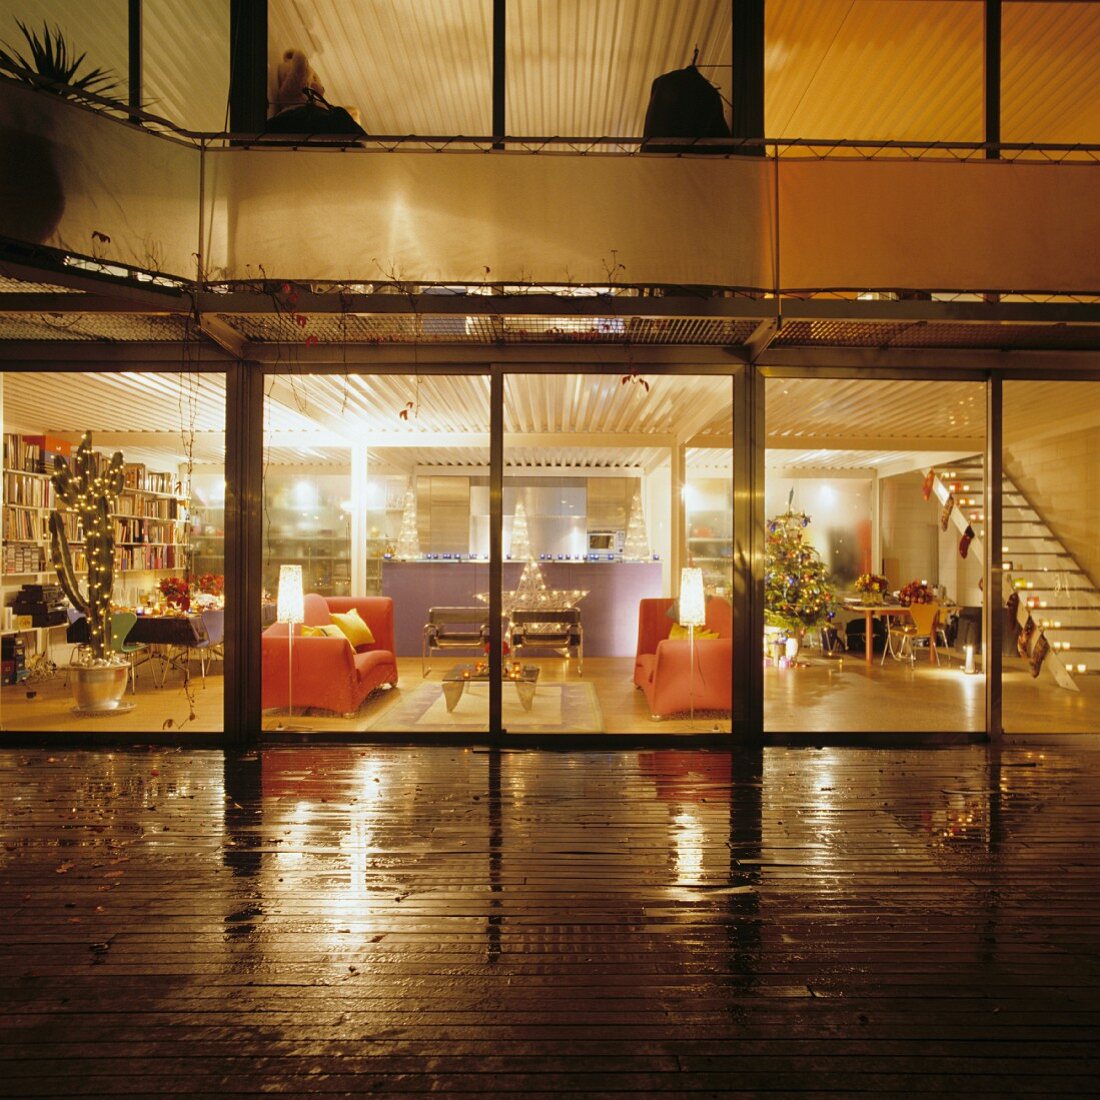 Nachtblick von regennasser Terrasse in den weihnachtlich geschmückten Wohnraum im Loftstil